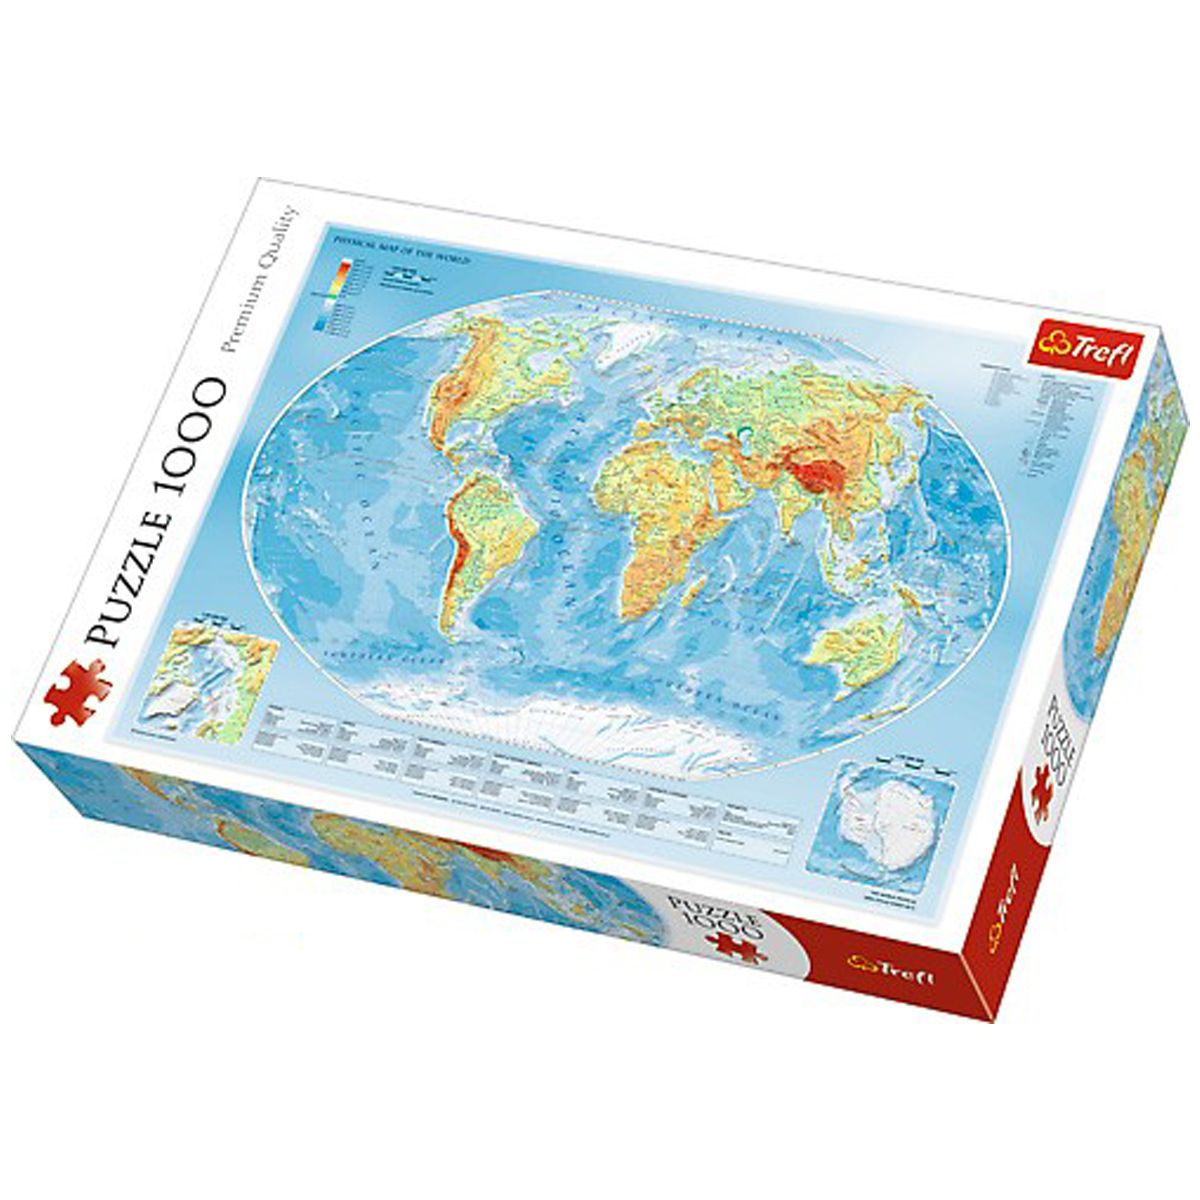 Пазлы "Карта Мира", 1000 элементов